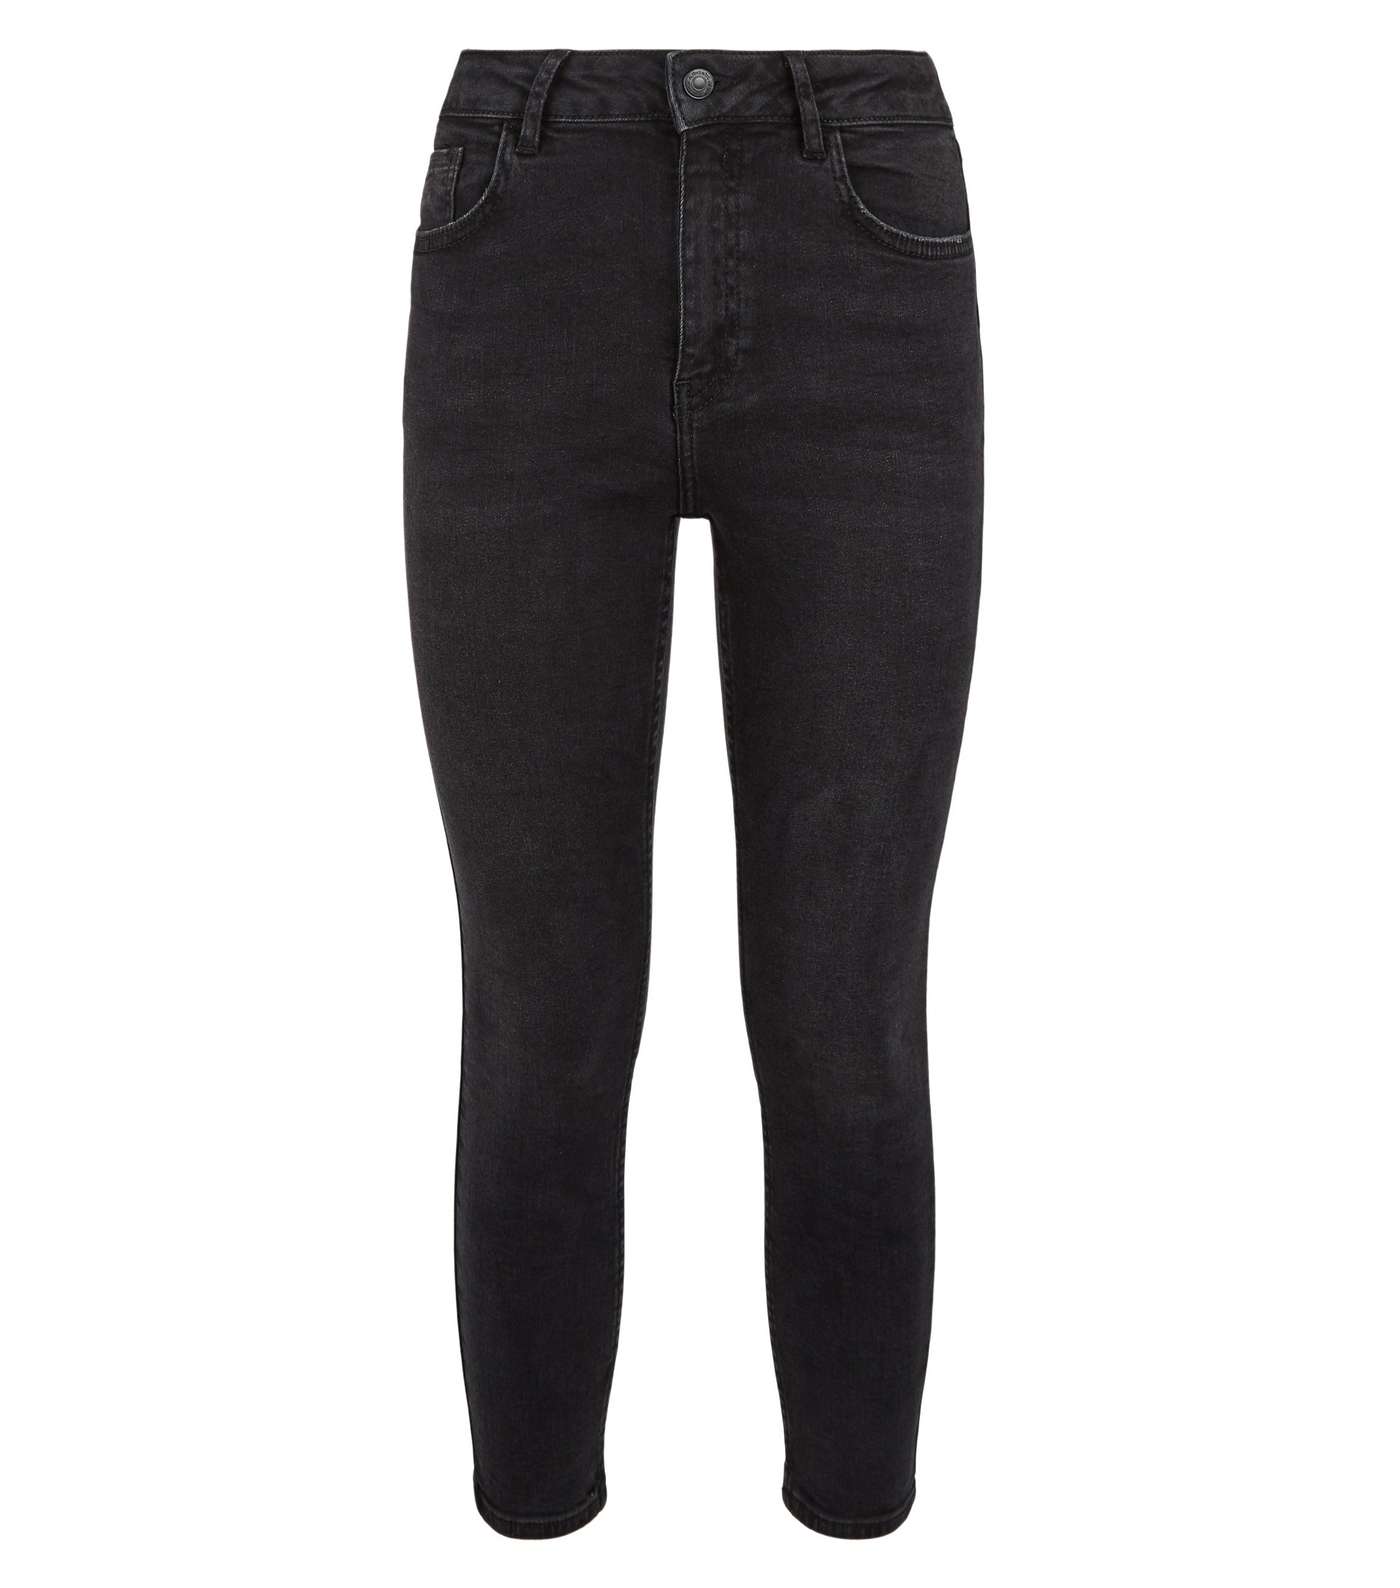 Petite Black 'Lift & Shape' Jenna Skinny Jeans Image 5